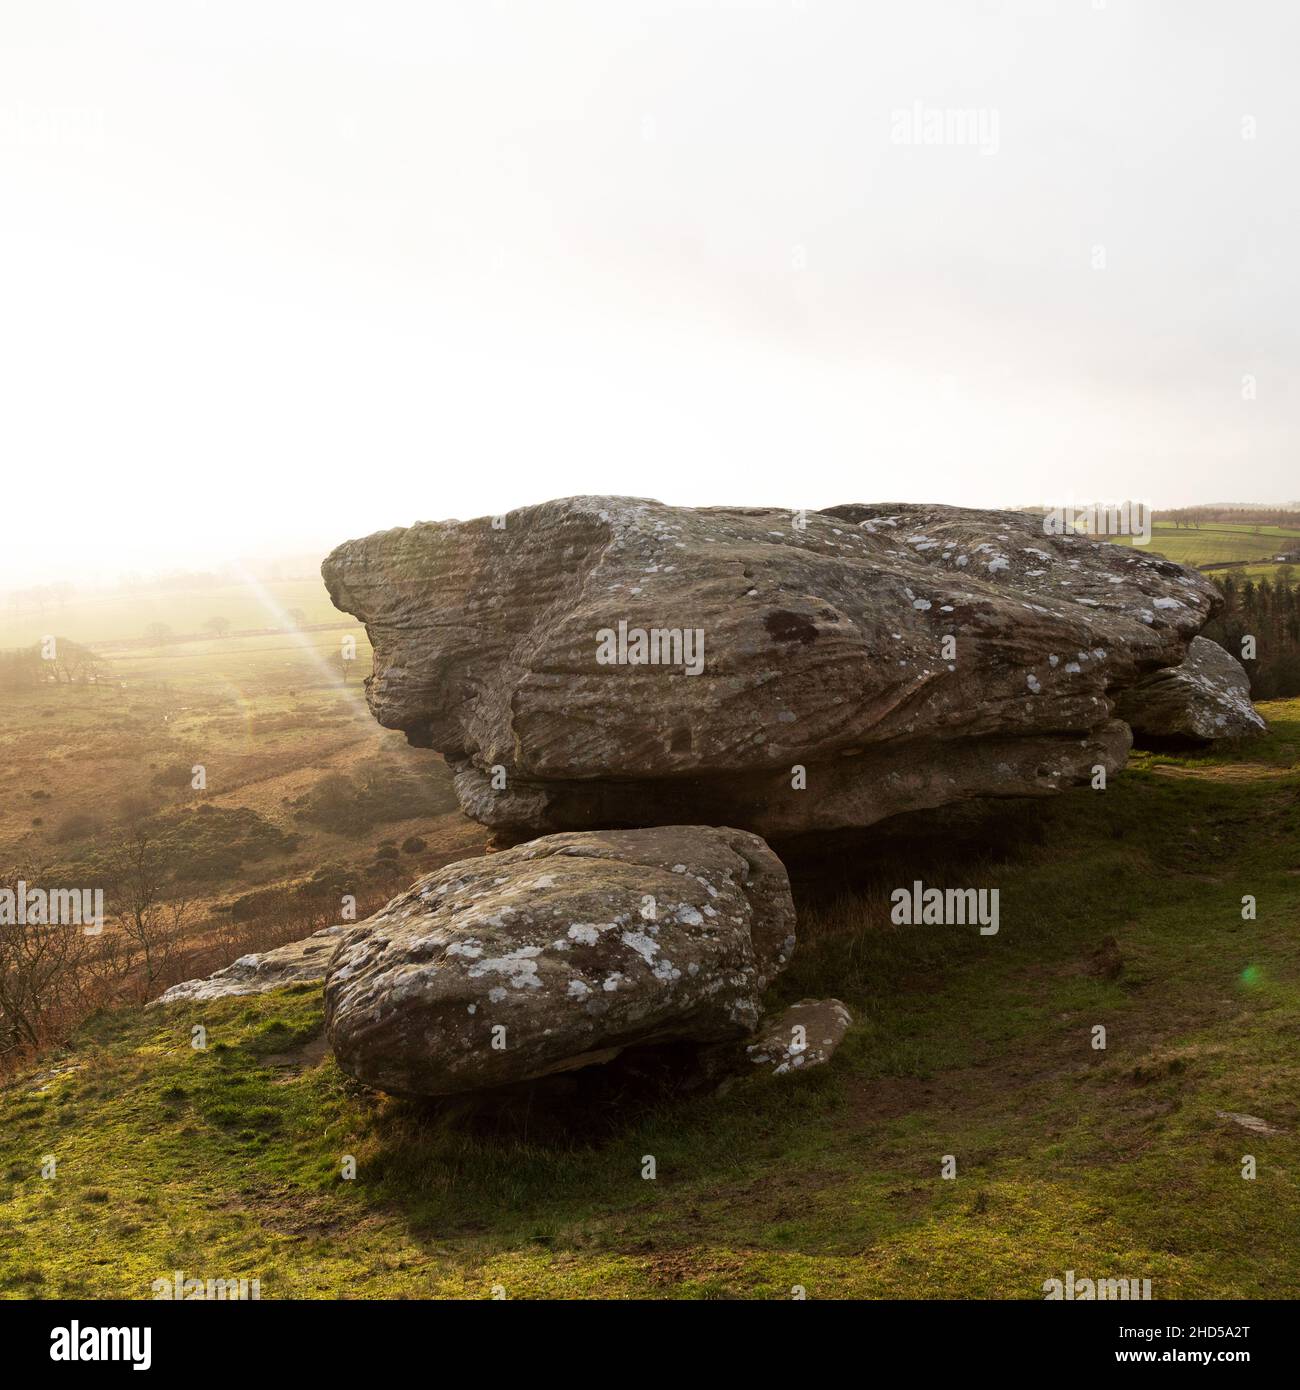 Roche surplombant la campagne à Shaftep Crags dans Northumberland, Angleterre.Le soleil d'hiver bas donne au ciel une teinte dorée. Banque D'Images